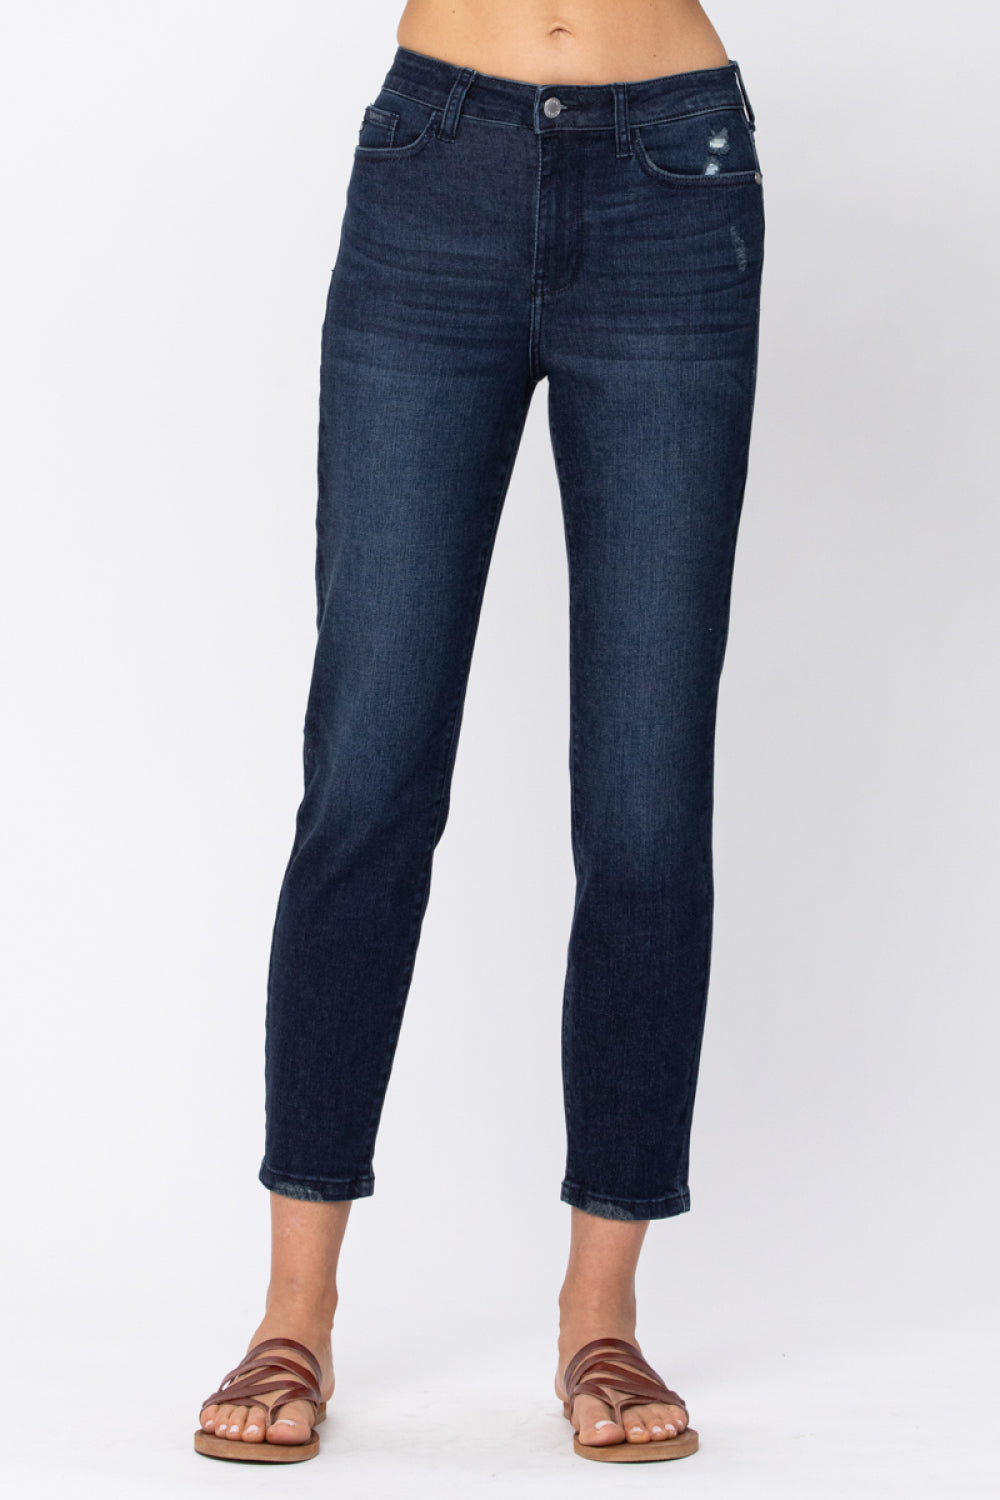 Judy Blue Going Places Cool Denim Boyfriend Jeans Jeans JT's Designer Fashion